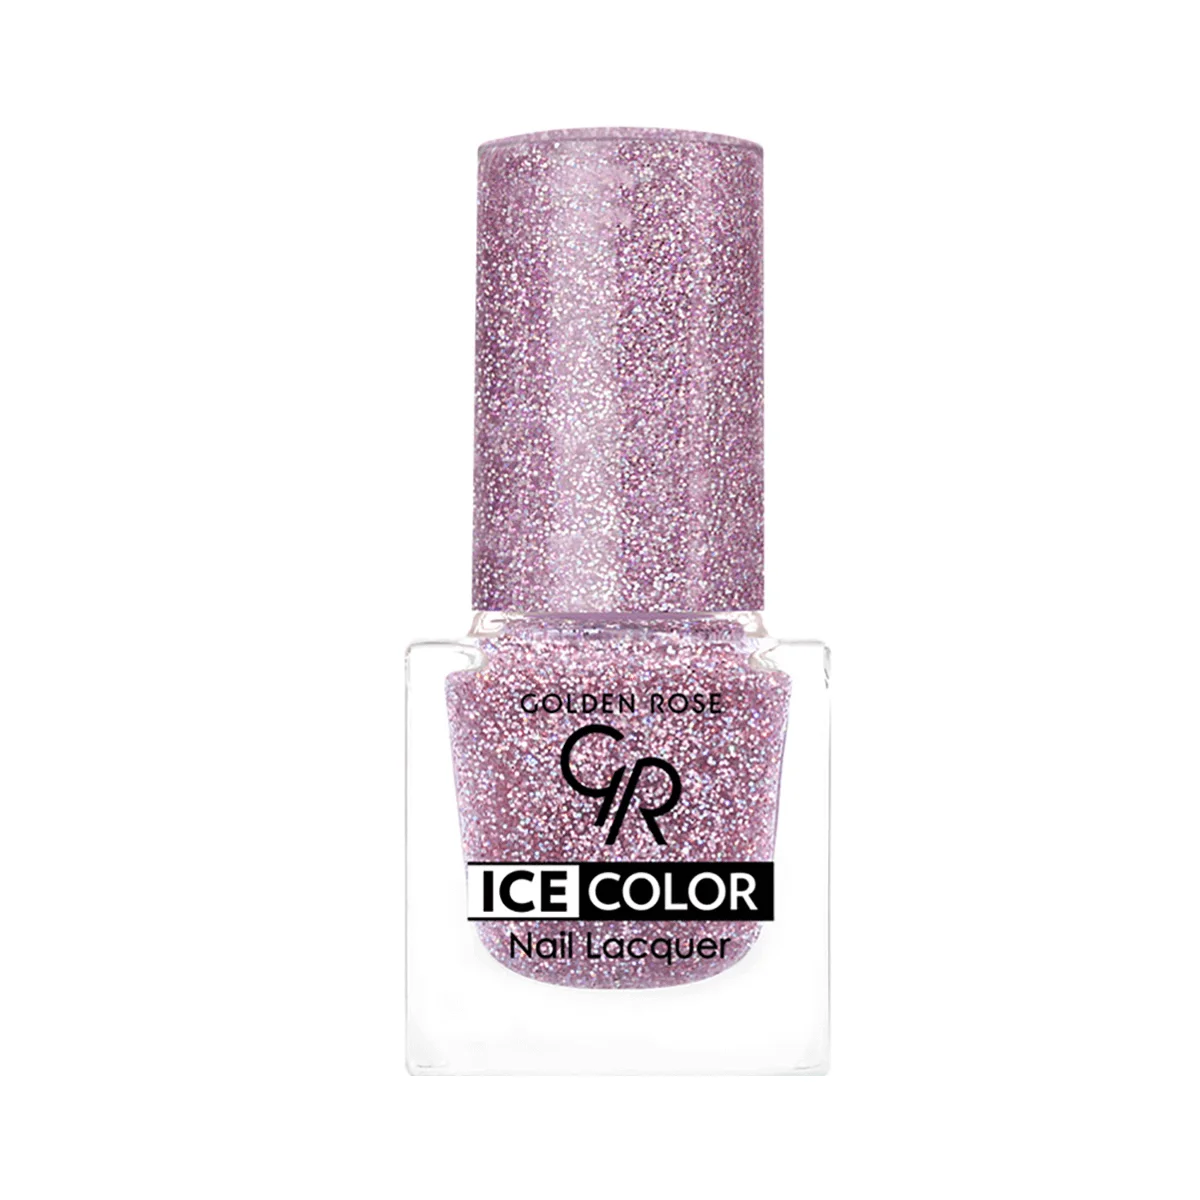 Купить Лак для ногтей Golden Rose Ice Color 197 серебристо-фиолетовый 6 мл